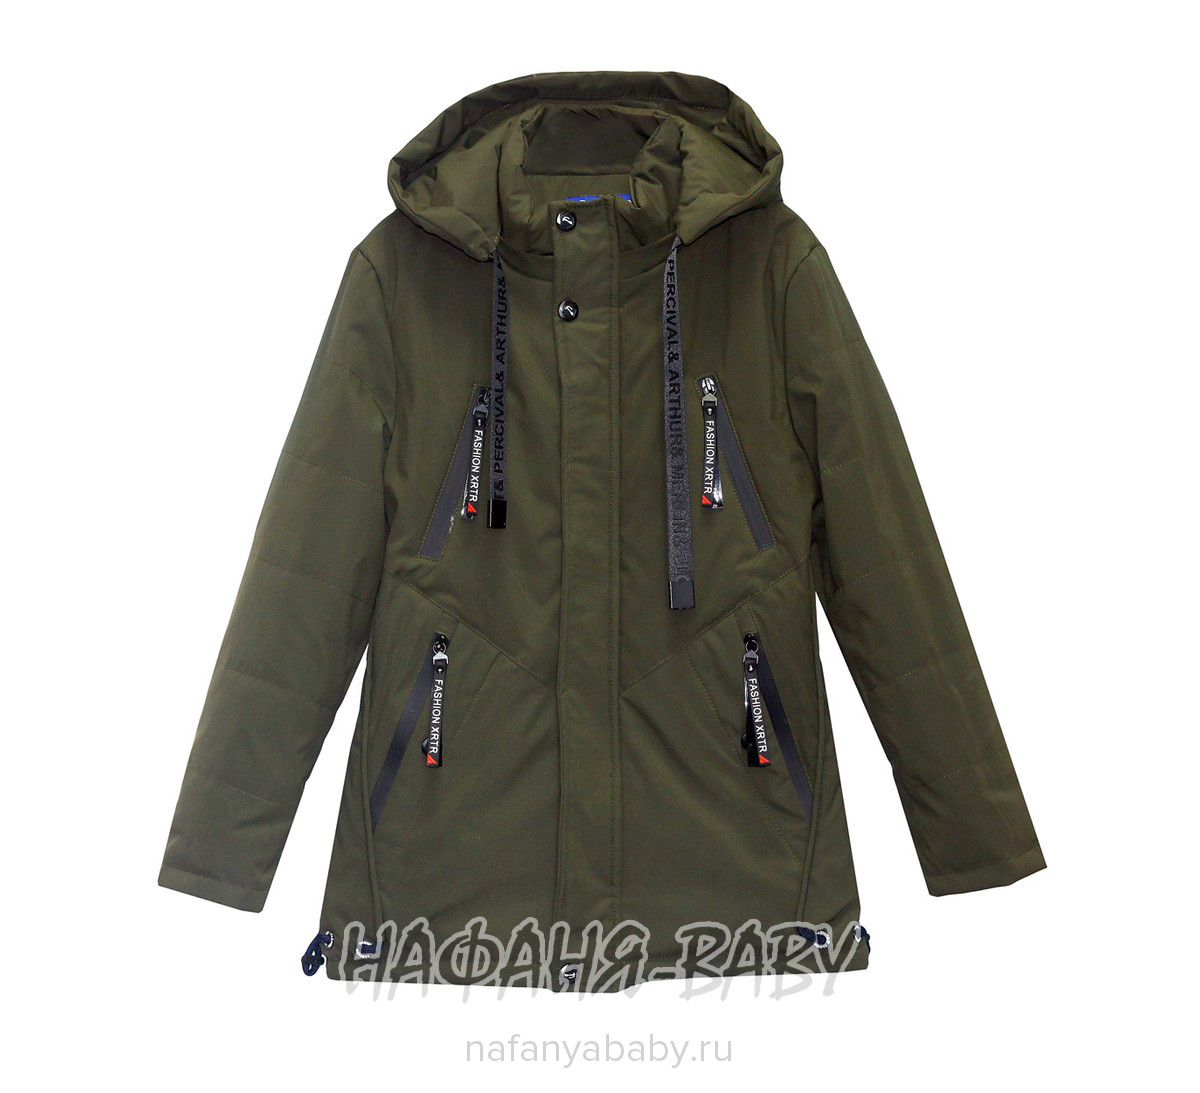 Подростковая демисезонная куртка XRTR, купить в интернет магазине Нафаня. арт: 618.